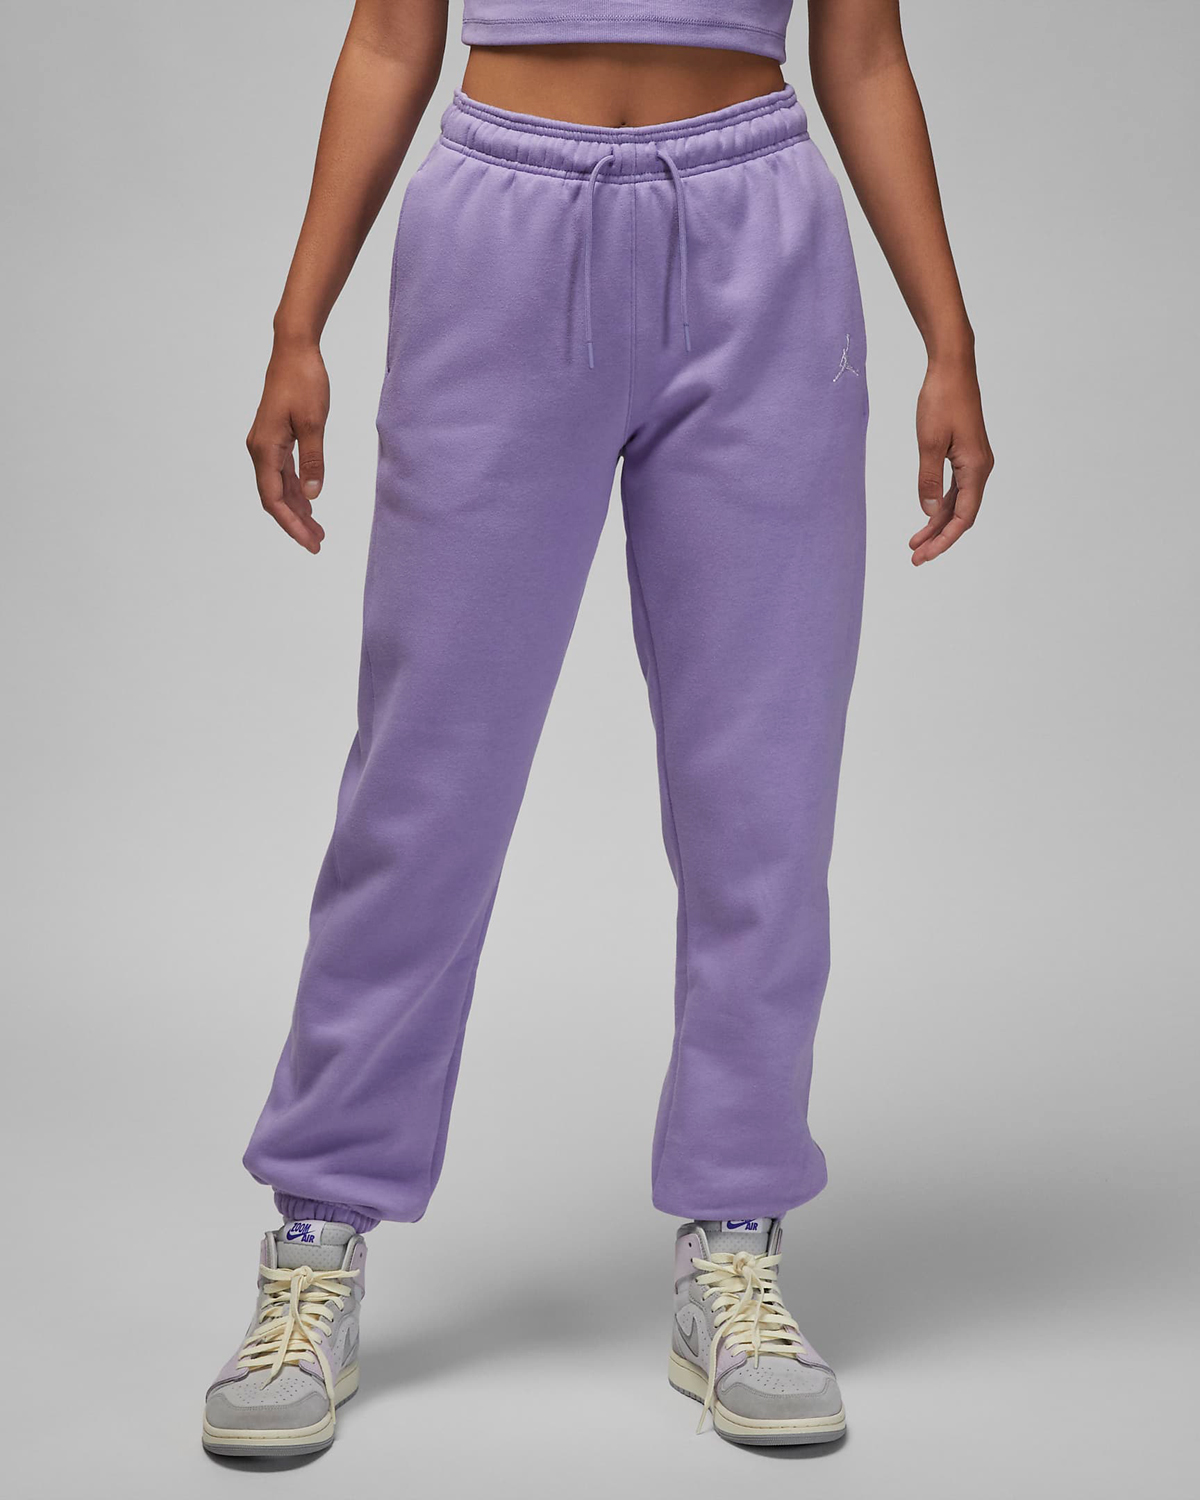 Jordan-Brooklyn-Womens-Fleece-Pants-Sky-J-Light-Purple